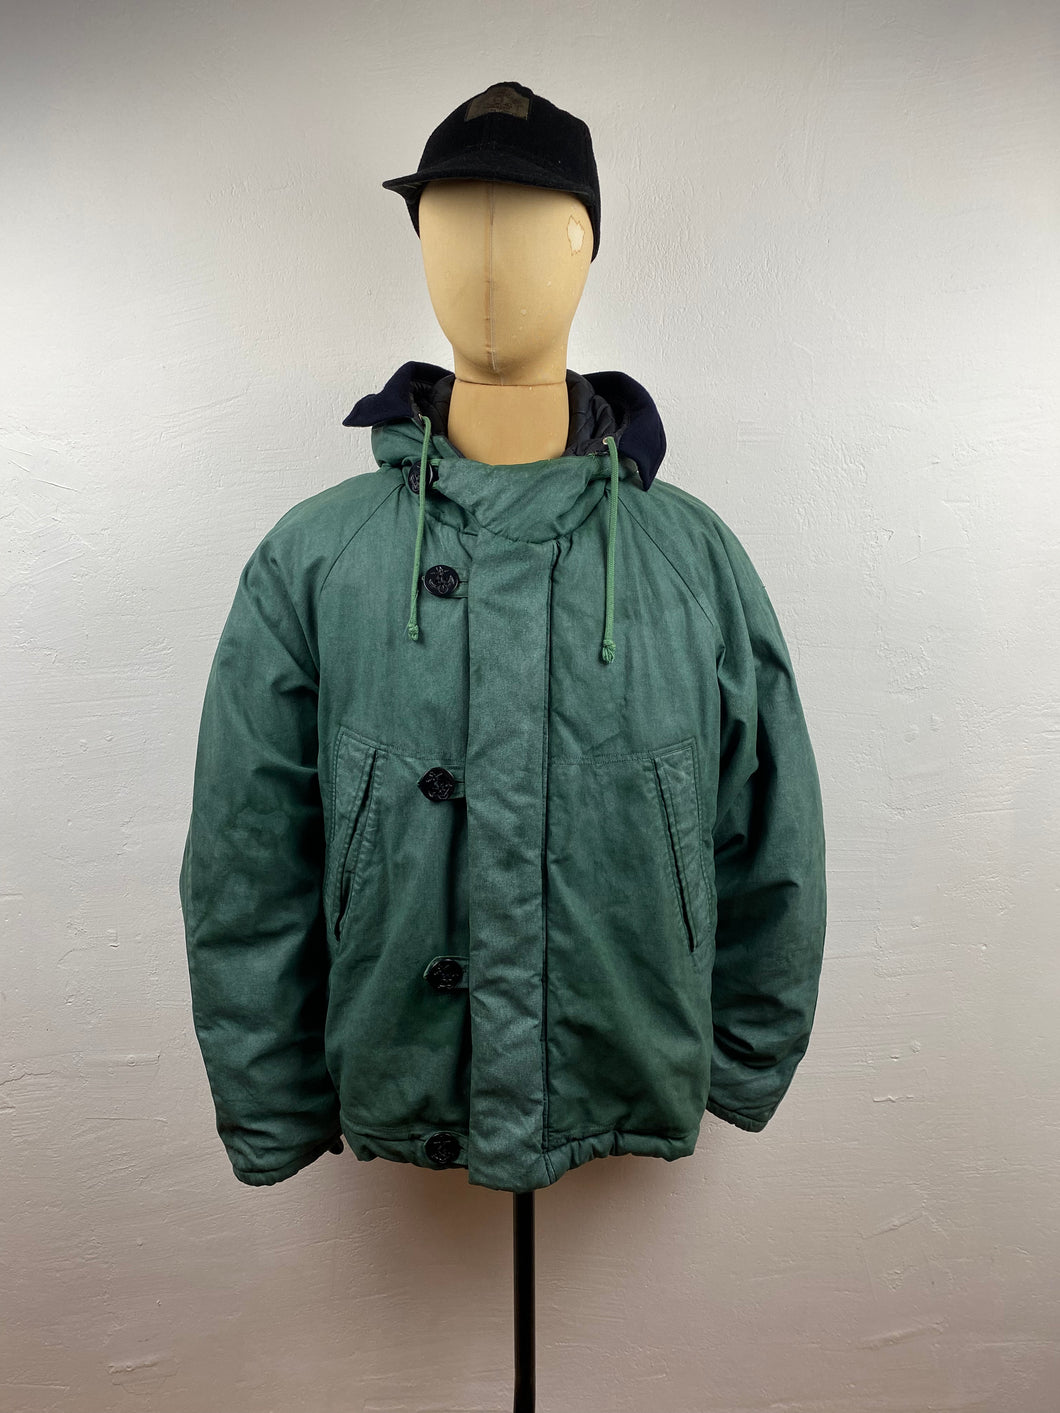 1988 Boneville navy arctic jacket green